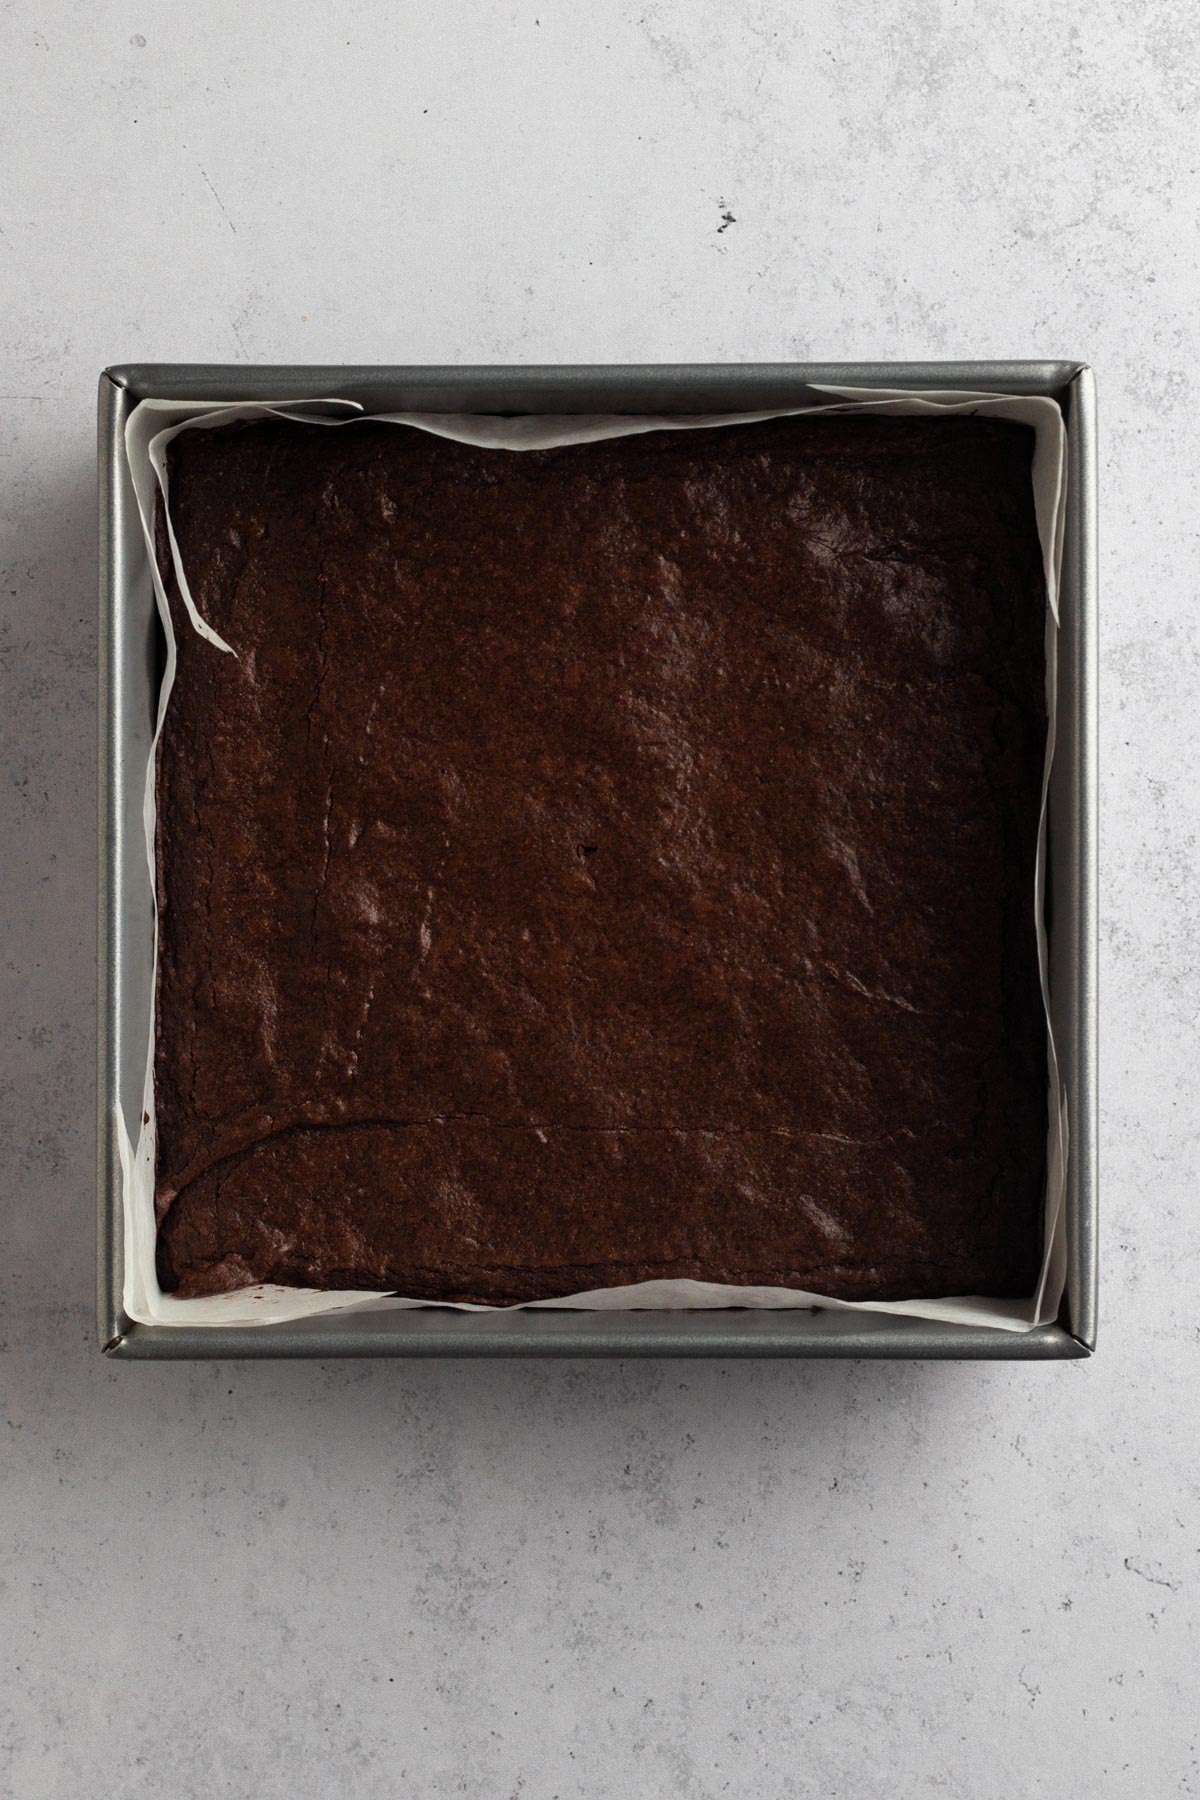 overhead view of baked brownies in a metal pan